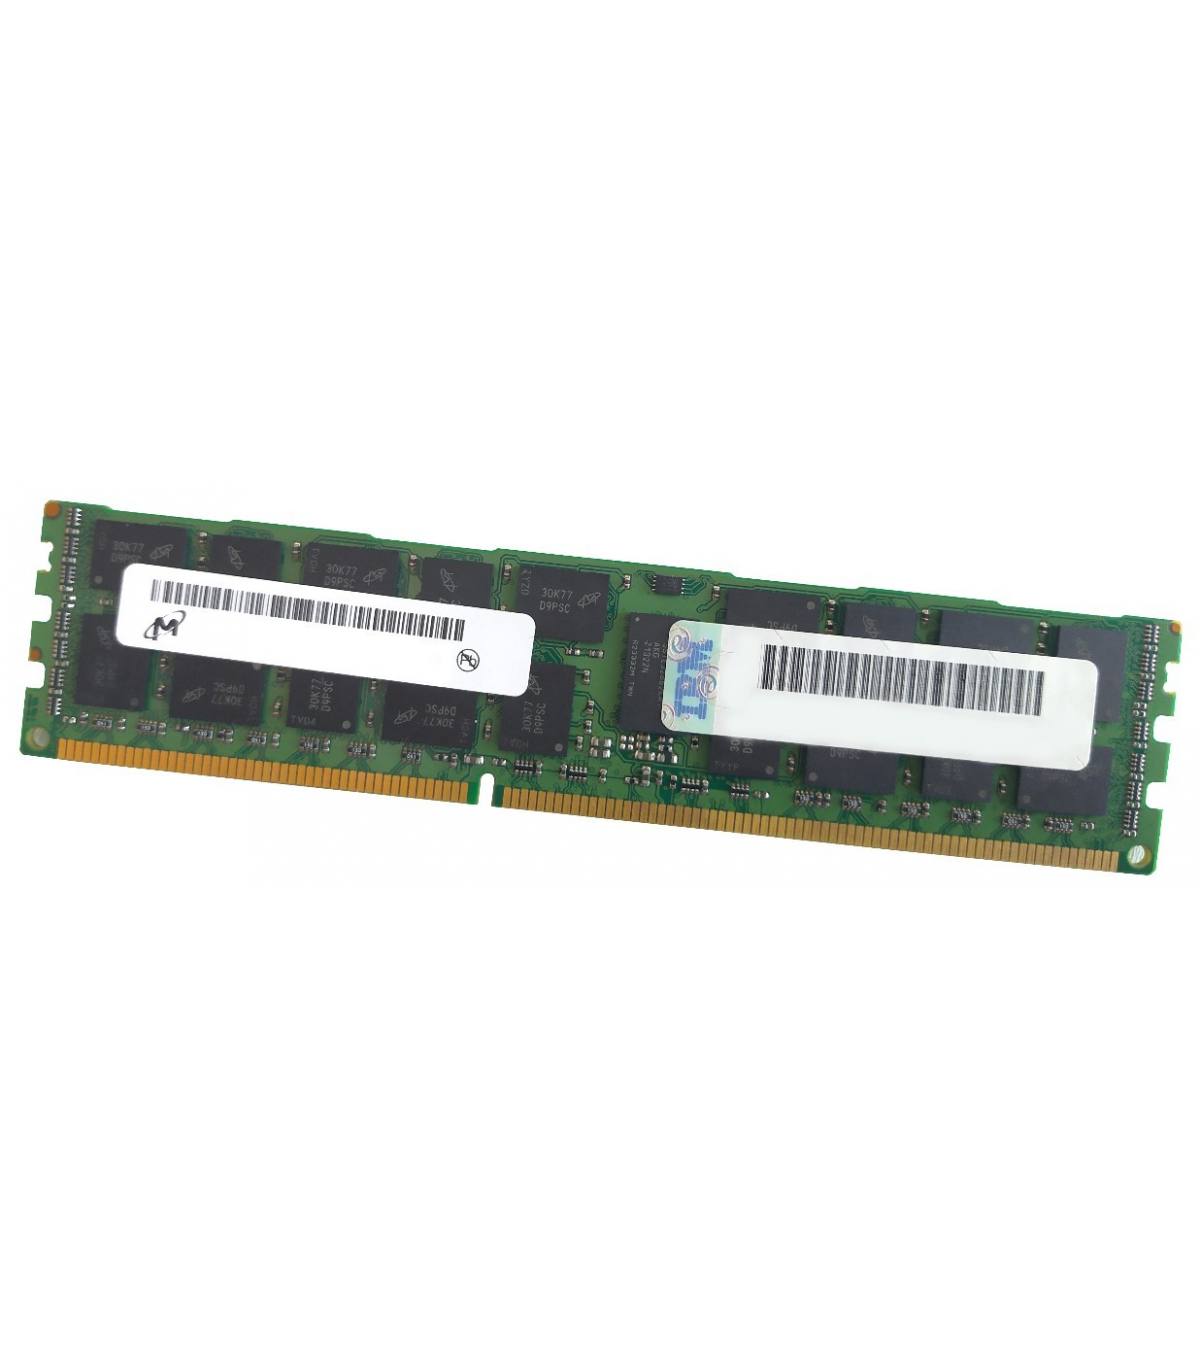 RAM MICRON/IBM 8GB 2Rx4 PC3 12800R 90Y3111 MT36JSF1G72PZ-1G6K1 1332